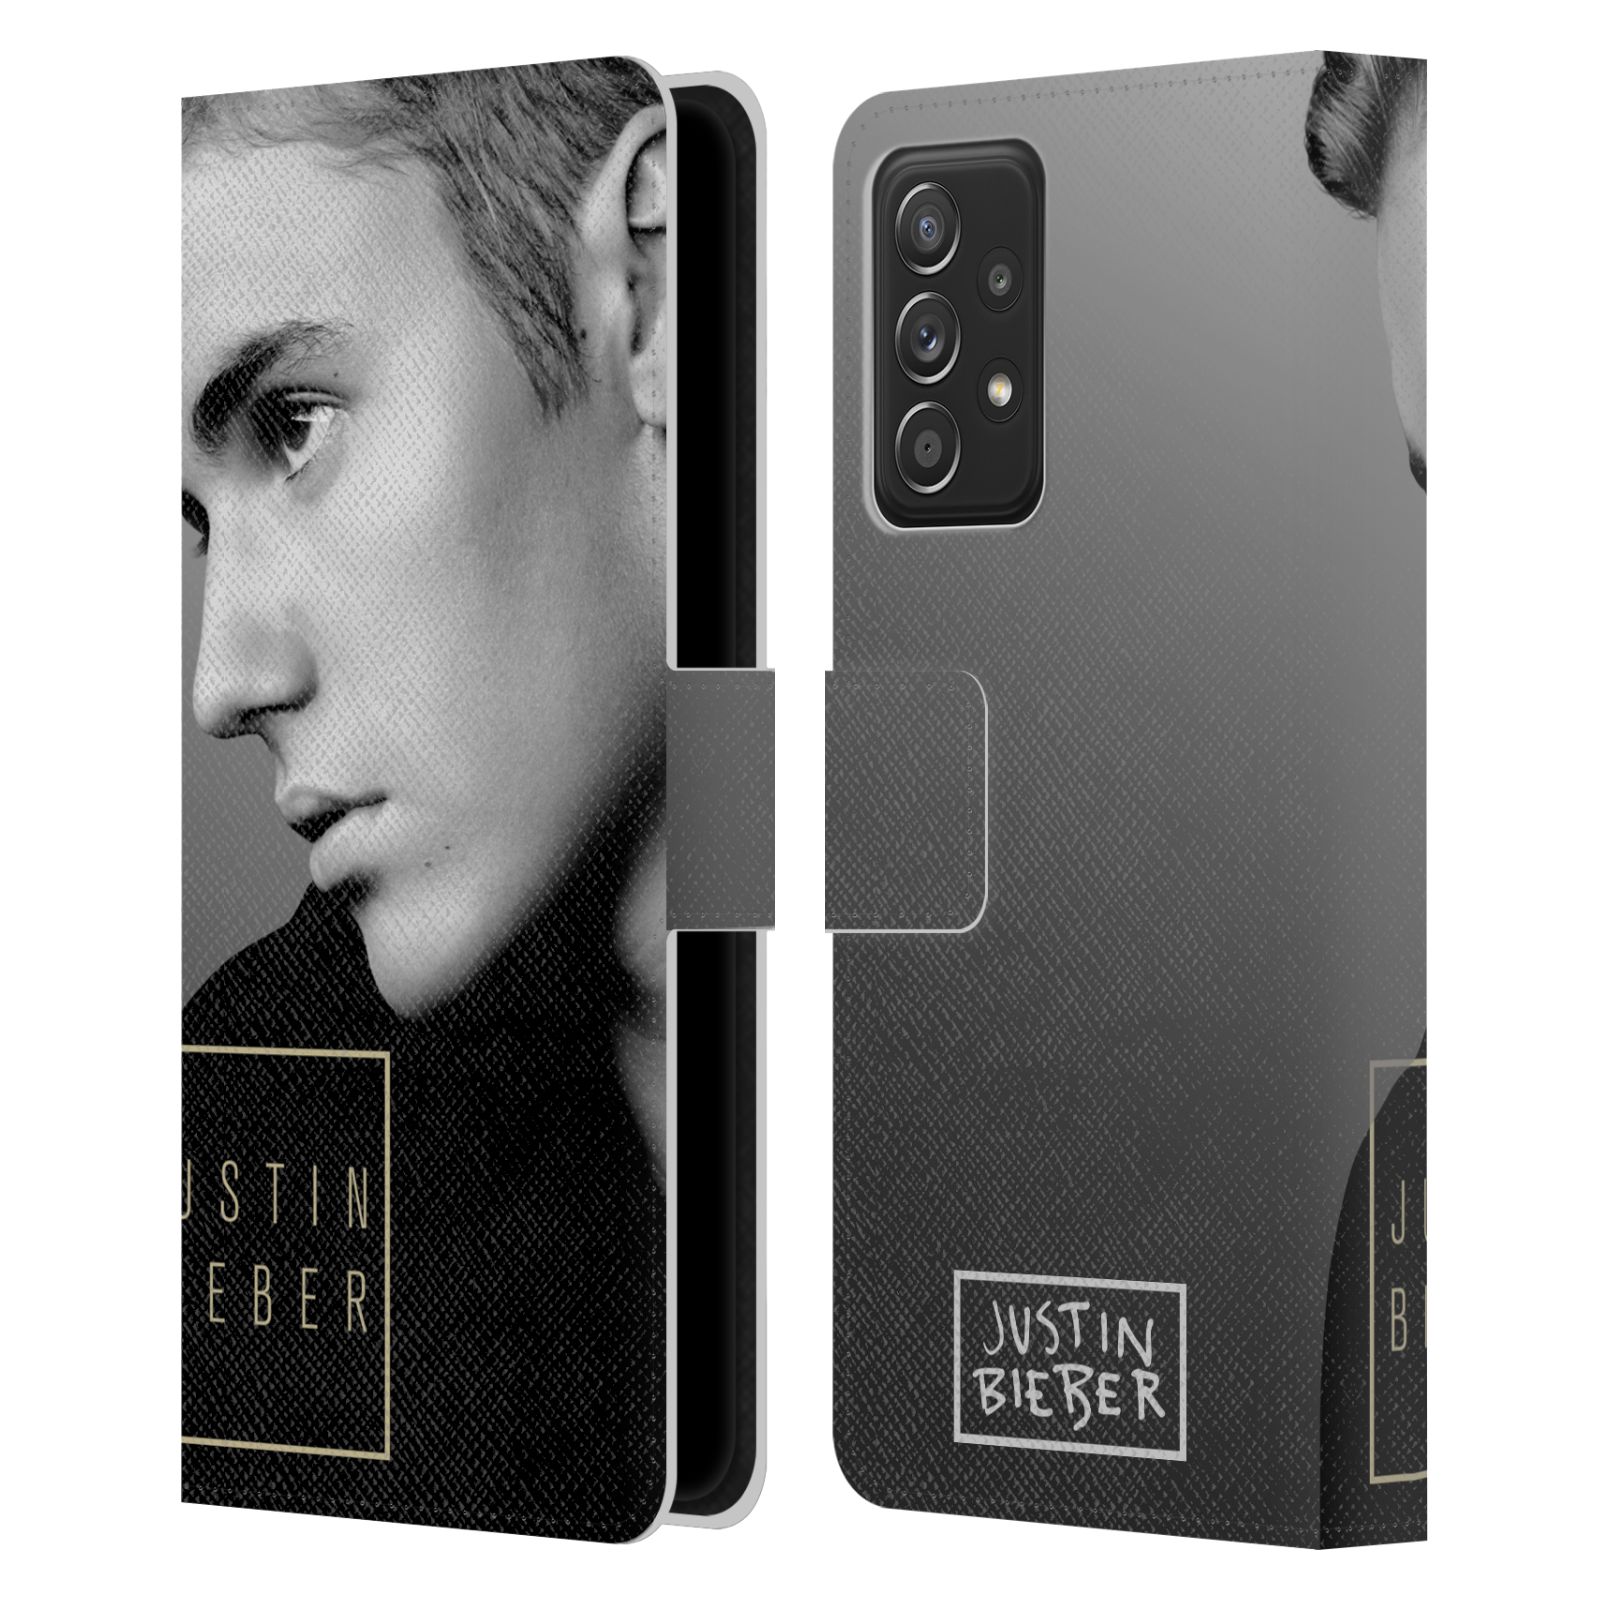 Pouzdro HEAD CASE na mobil Samsung Galaxy A52 / A52 5G / A52s 5G  Justin Bieber - černobílé zrcadlo